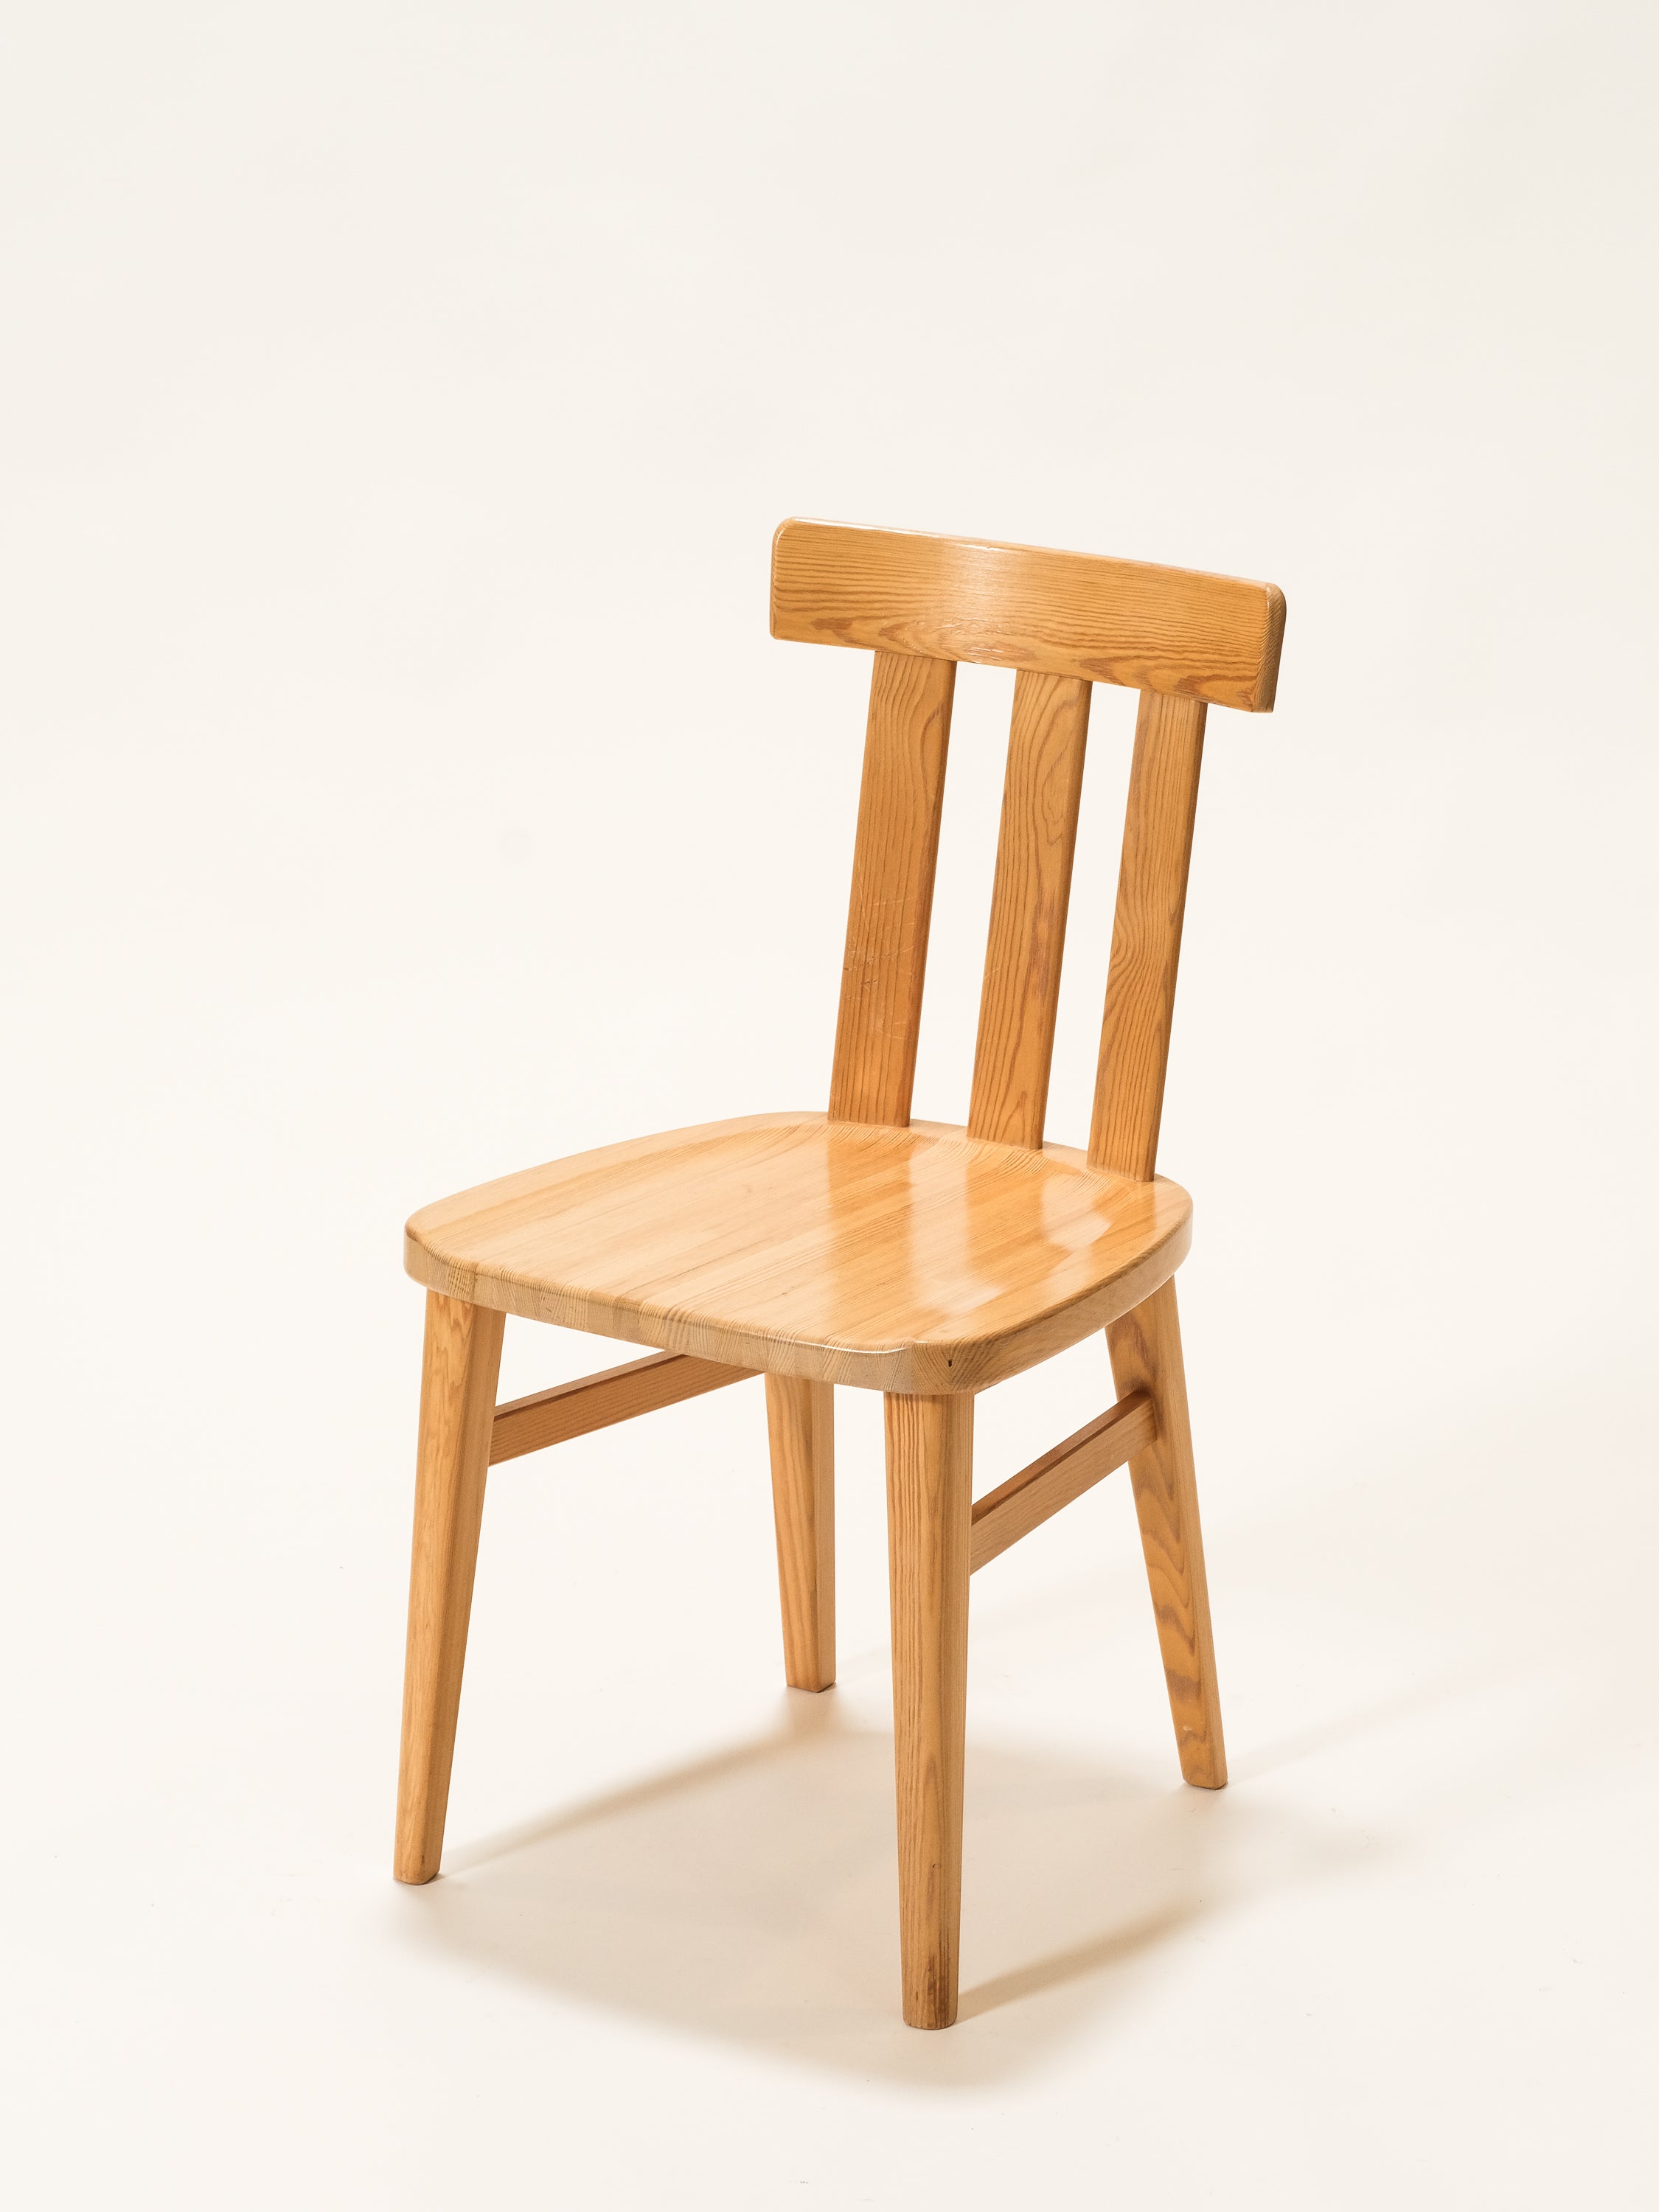 Solid Pine Dining Chairs Model "Leo" by Werner West for Keravan Puusepäntehdas, Set of 6